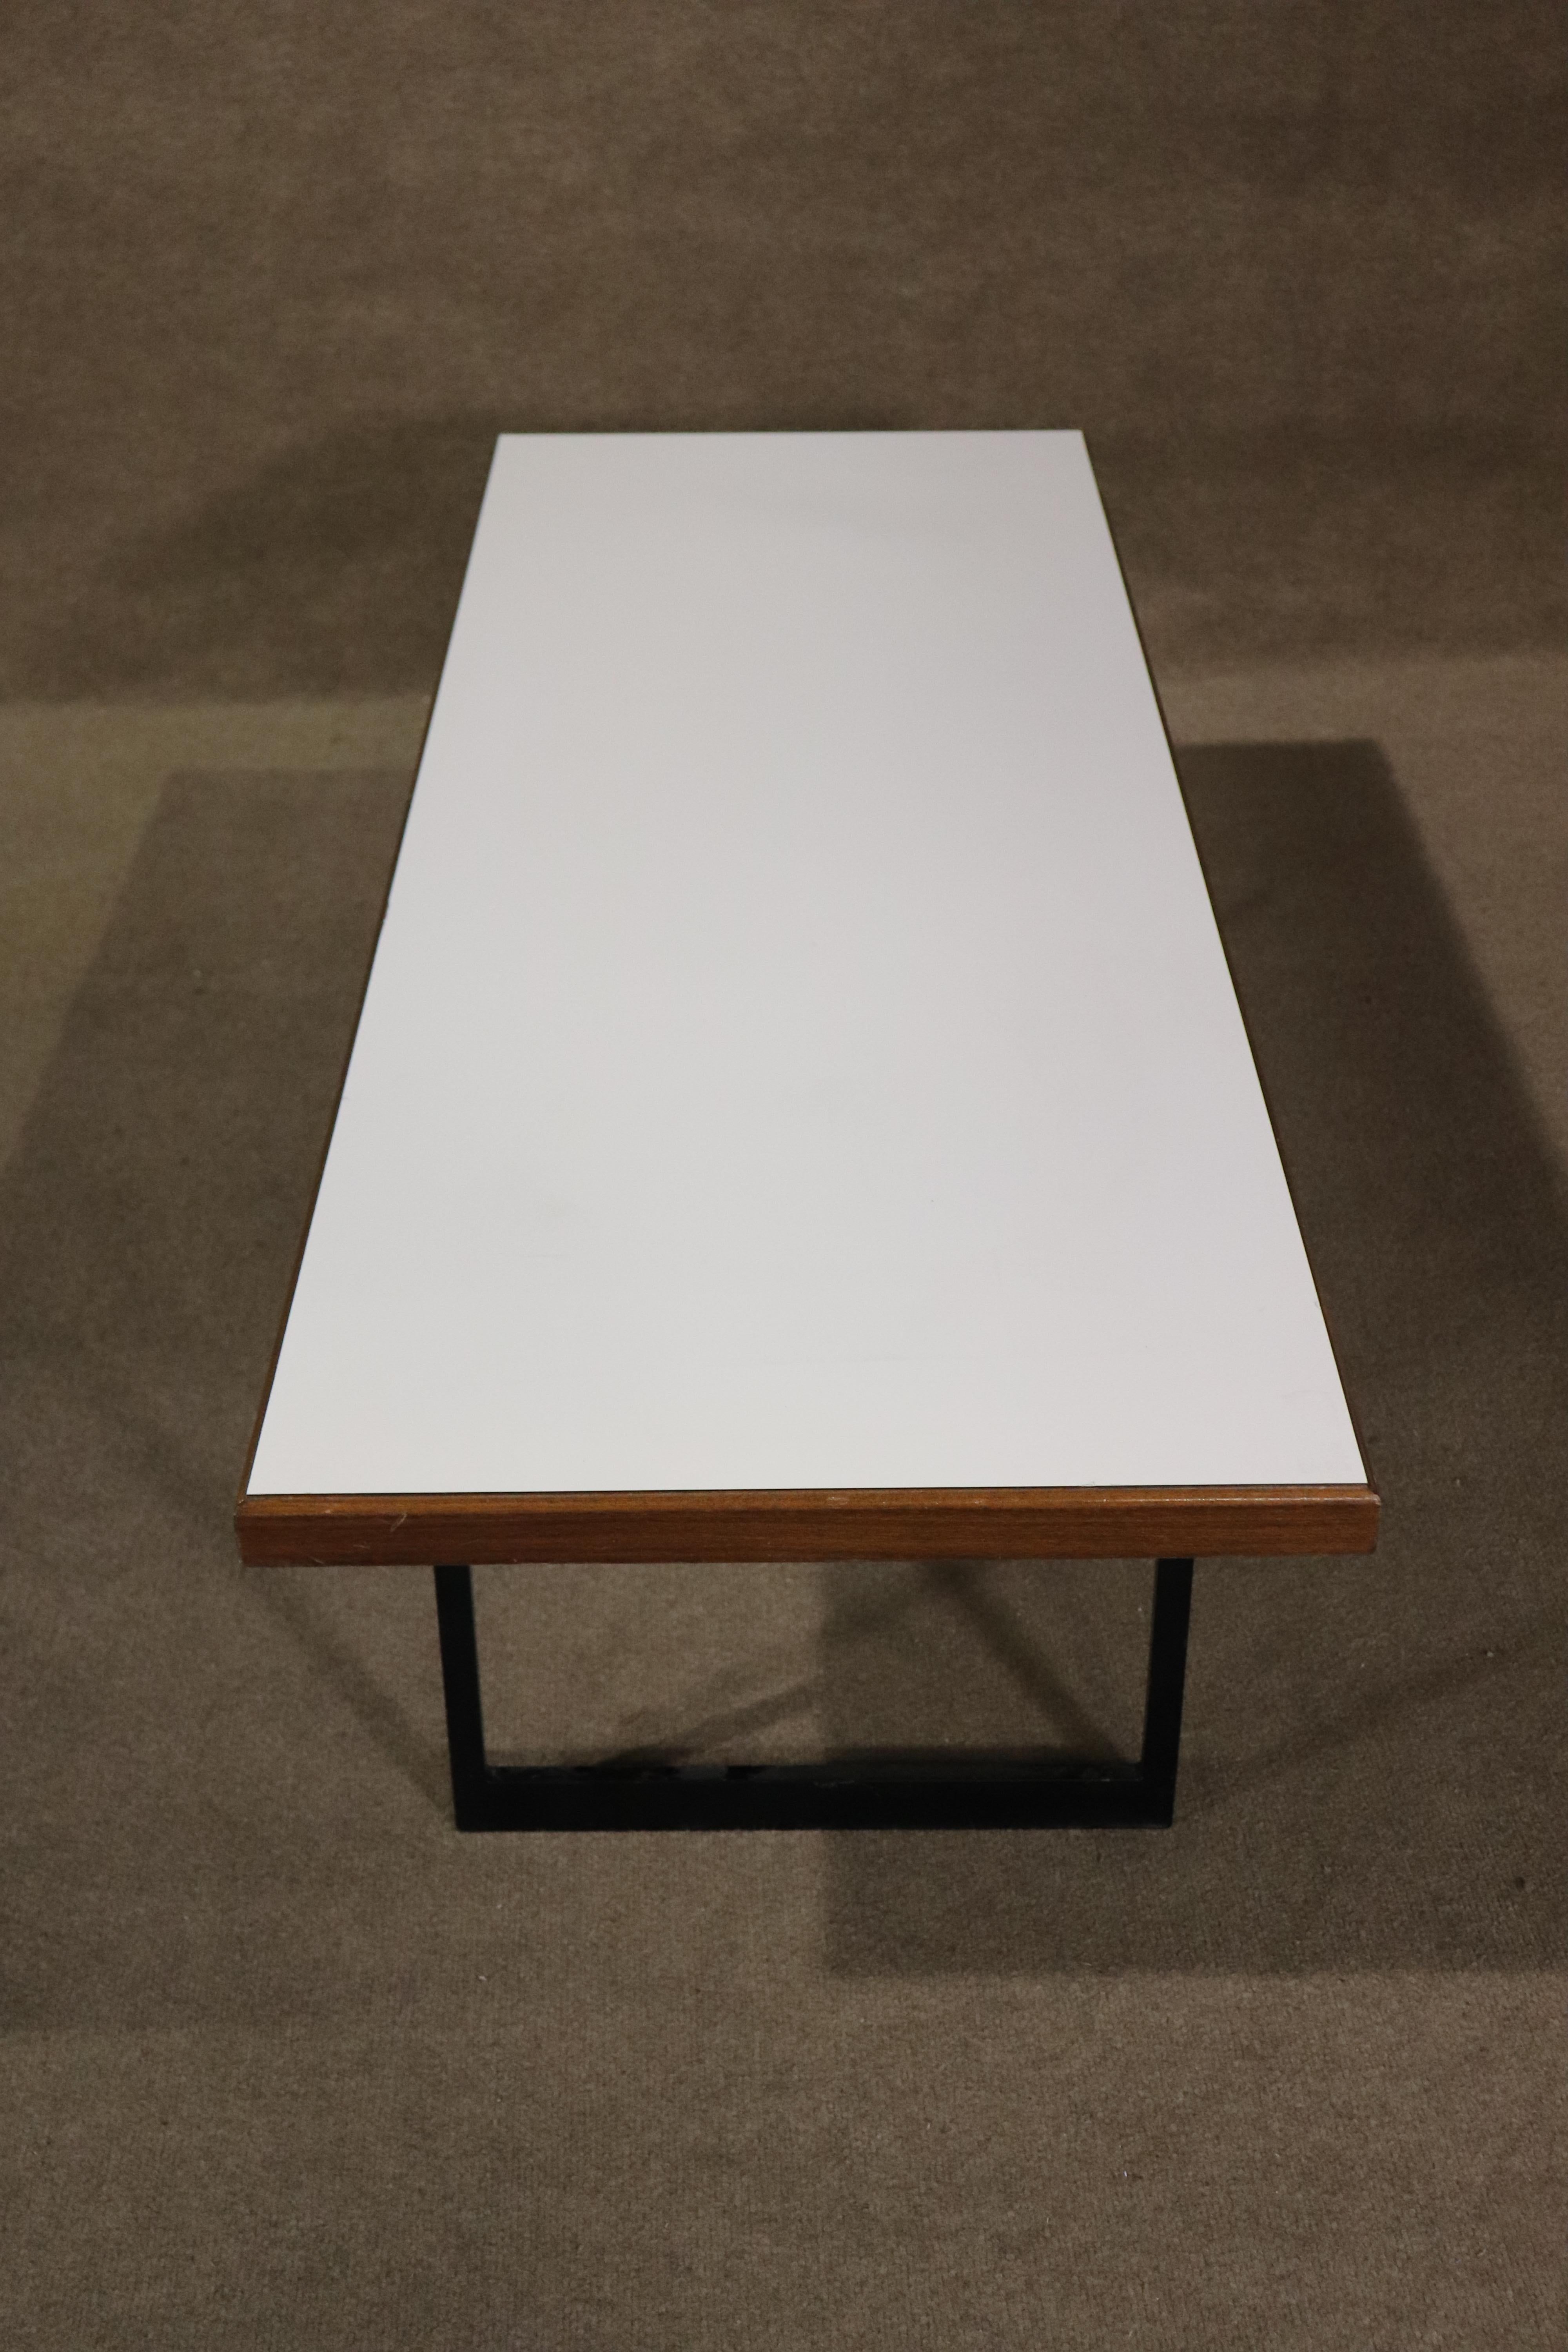 Longue table ou banc de cinq pieds avec plateau en stratifié blanc sur fond de bois de noyer. Monté sur un socle en métal noir.
Veuillez confirmer le lieu NY ou NJ